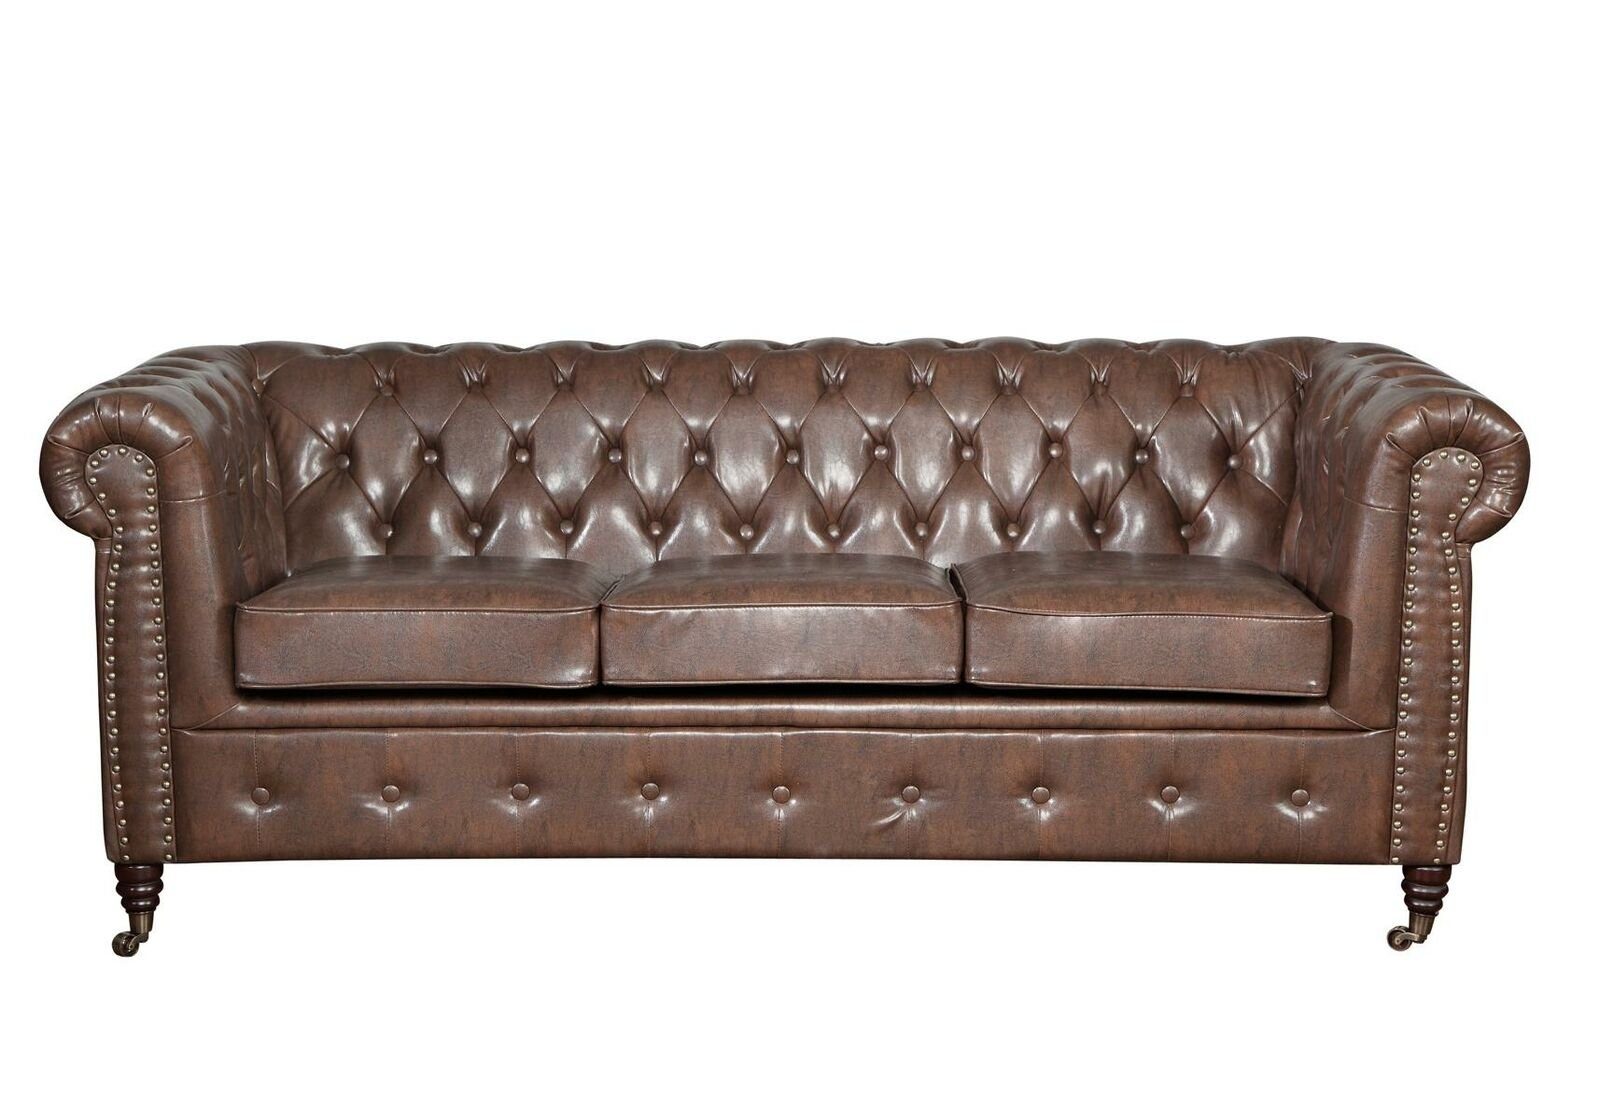 JVmoebel Sofa Klassischer Chesterfield Dreisitzer 3-Sitzer Couch Ledermöbel Neu, Made in Europe